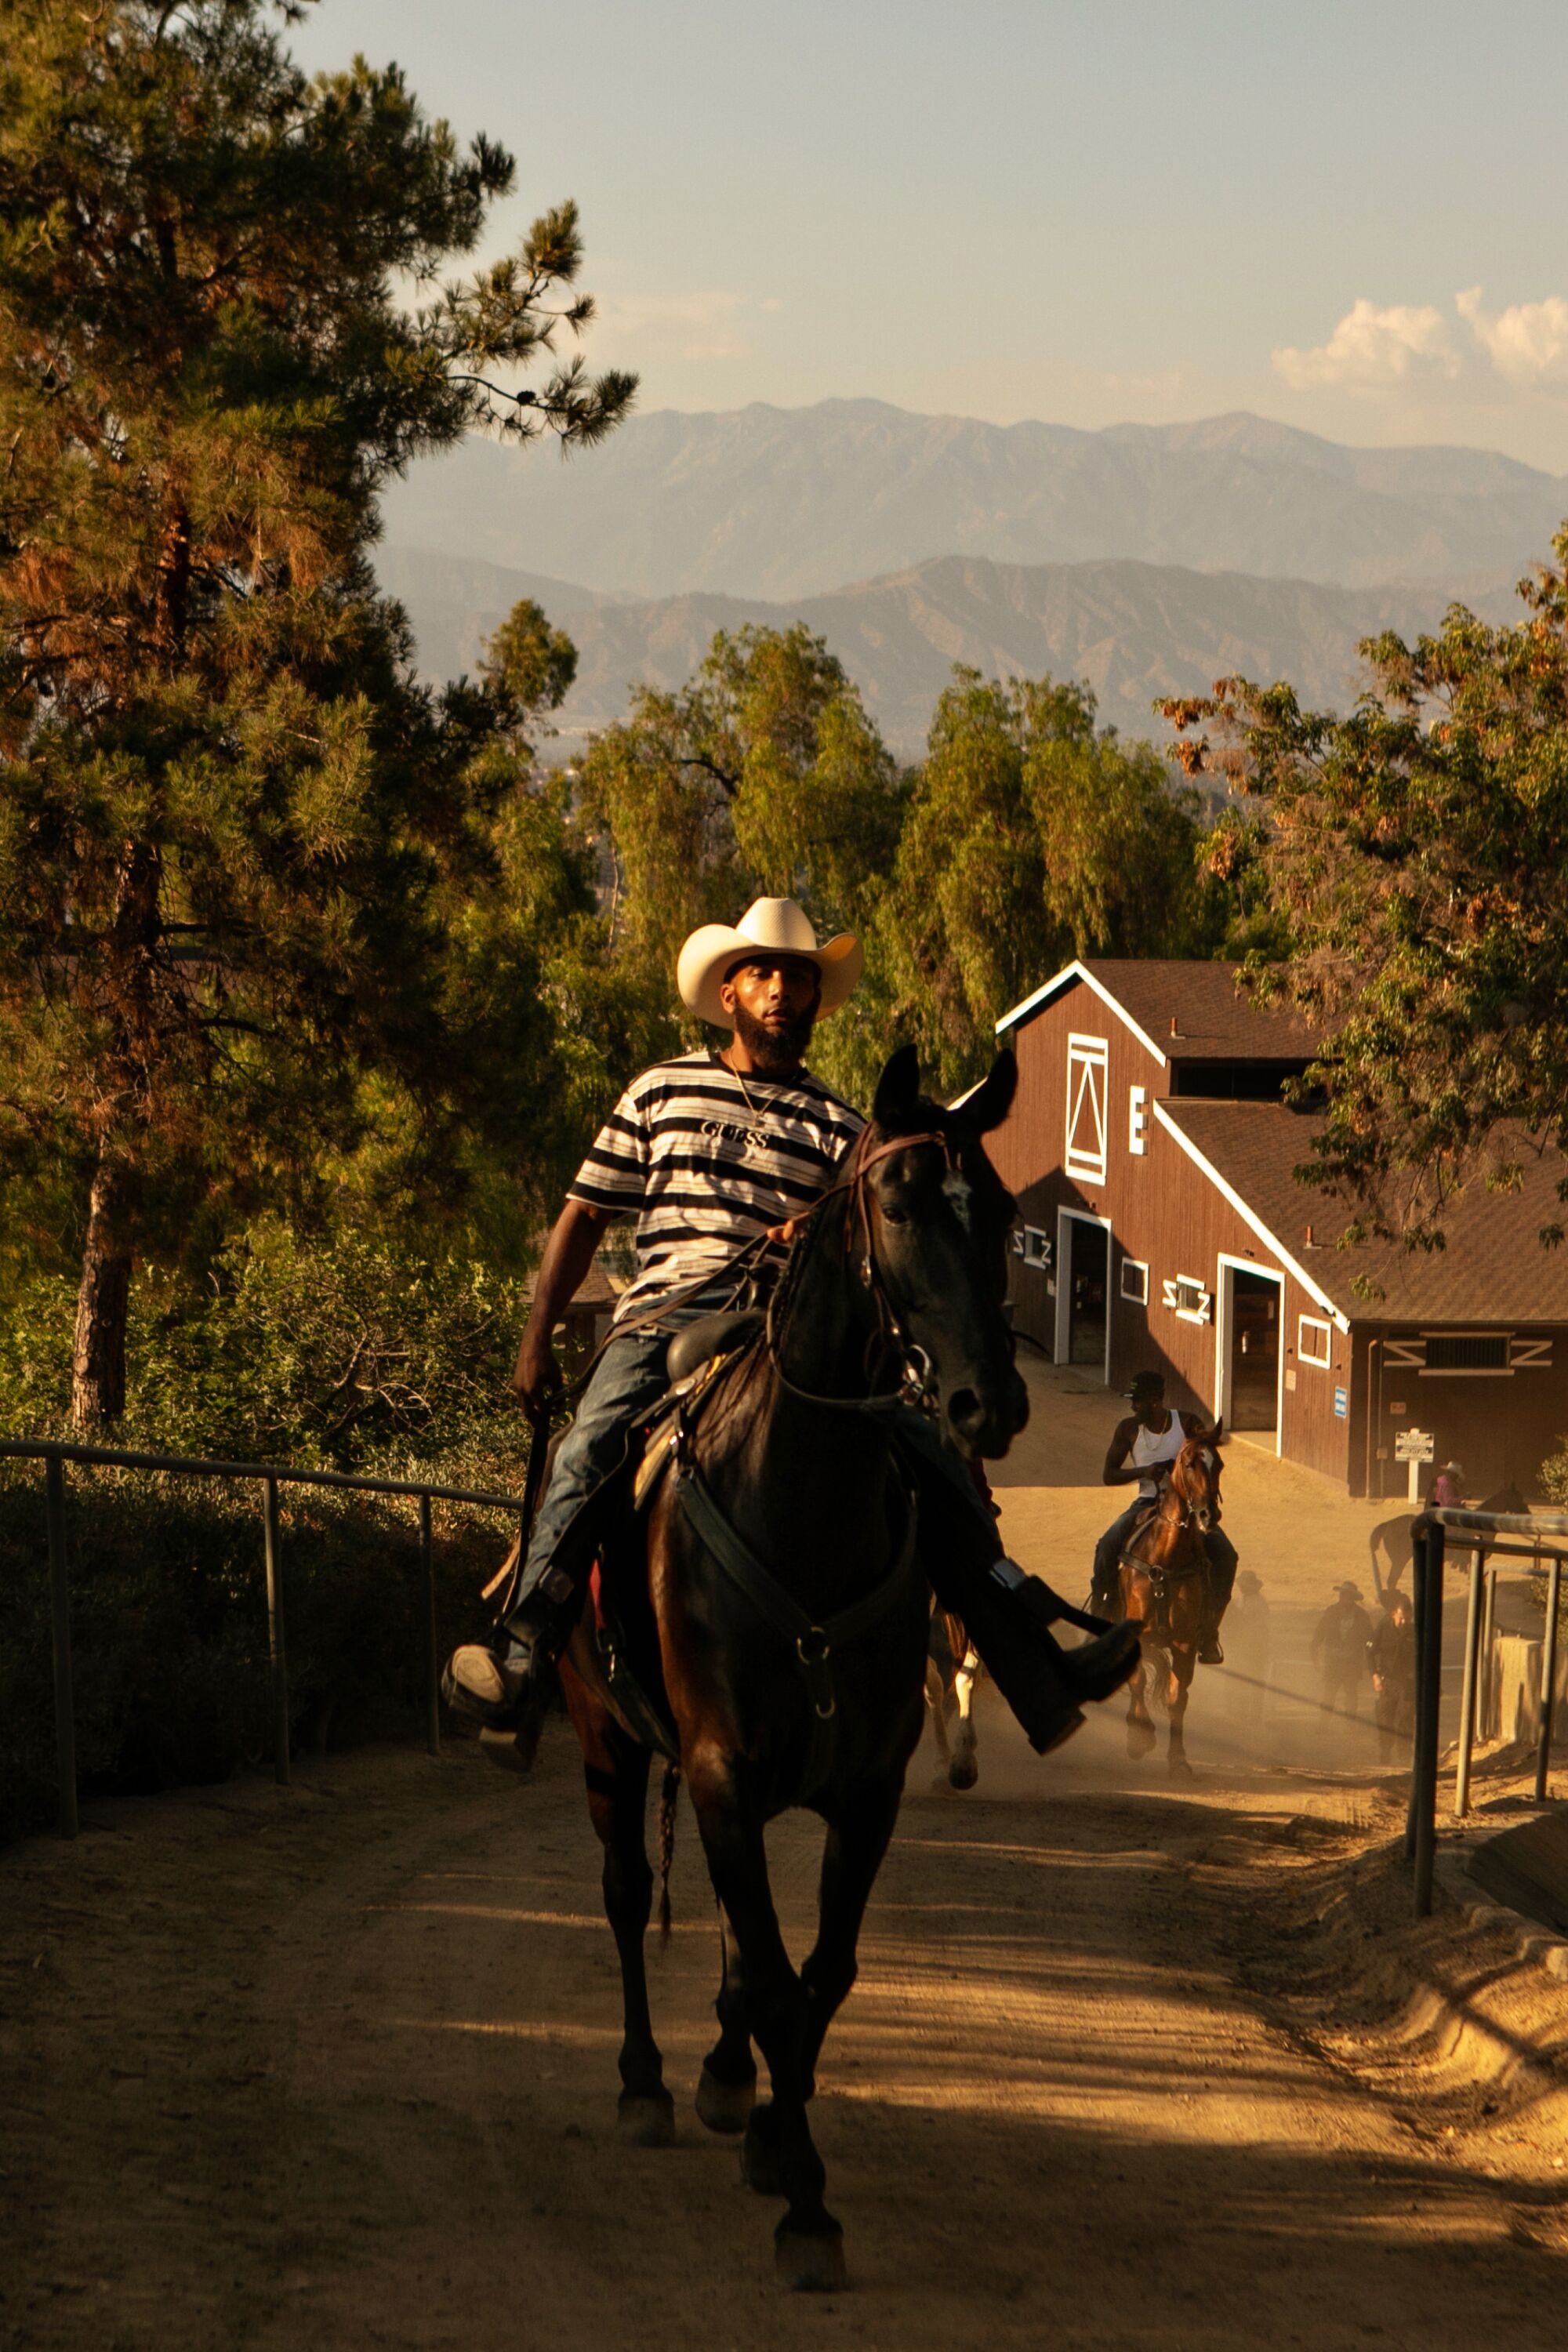 Khám phá cảm giác mạnh mẽ và táo bạo khi leo lên ngựa đen ở California. Hình ảnh đầy uy nghi và cảm xúc này sẽ thôi thúc bạn khám phá những trải nghiệm mới lạ và thú vị hơn.